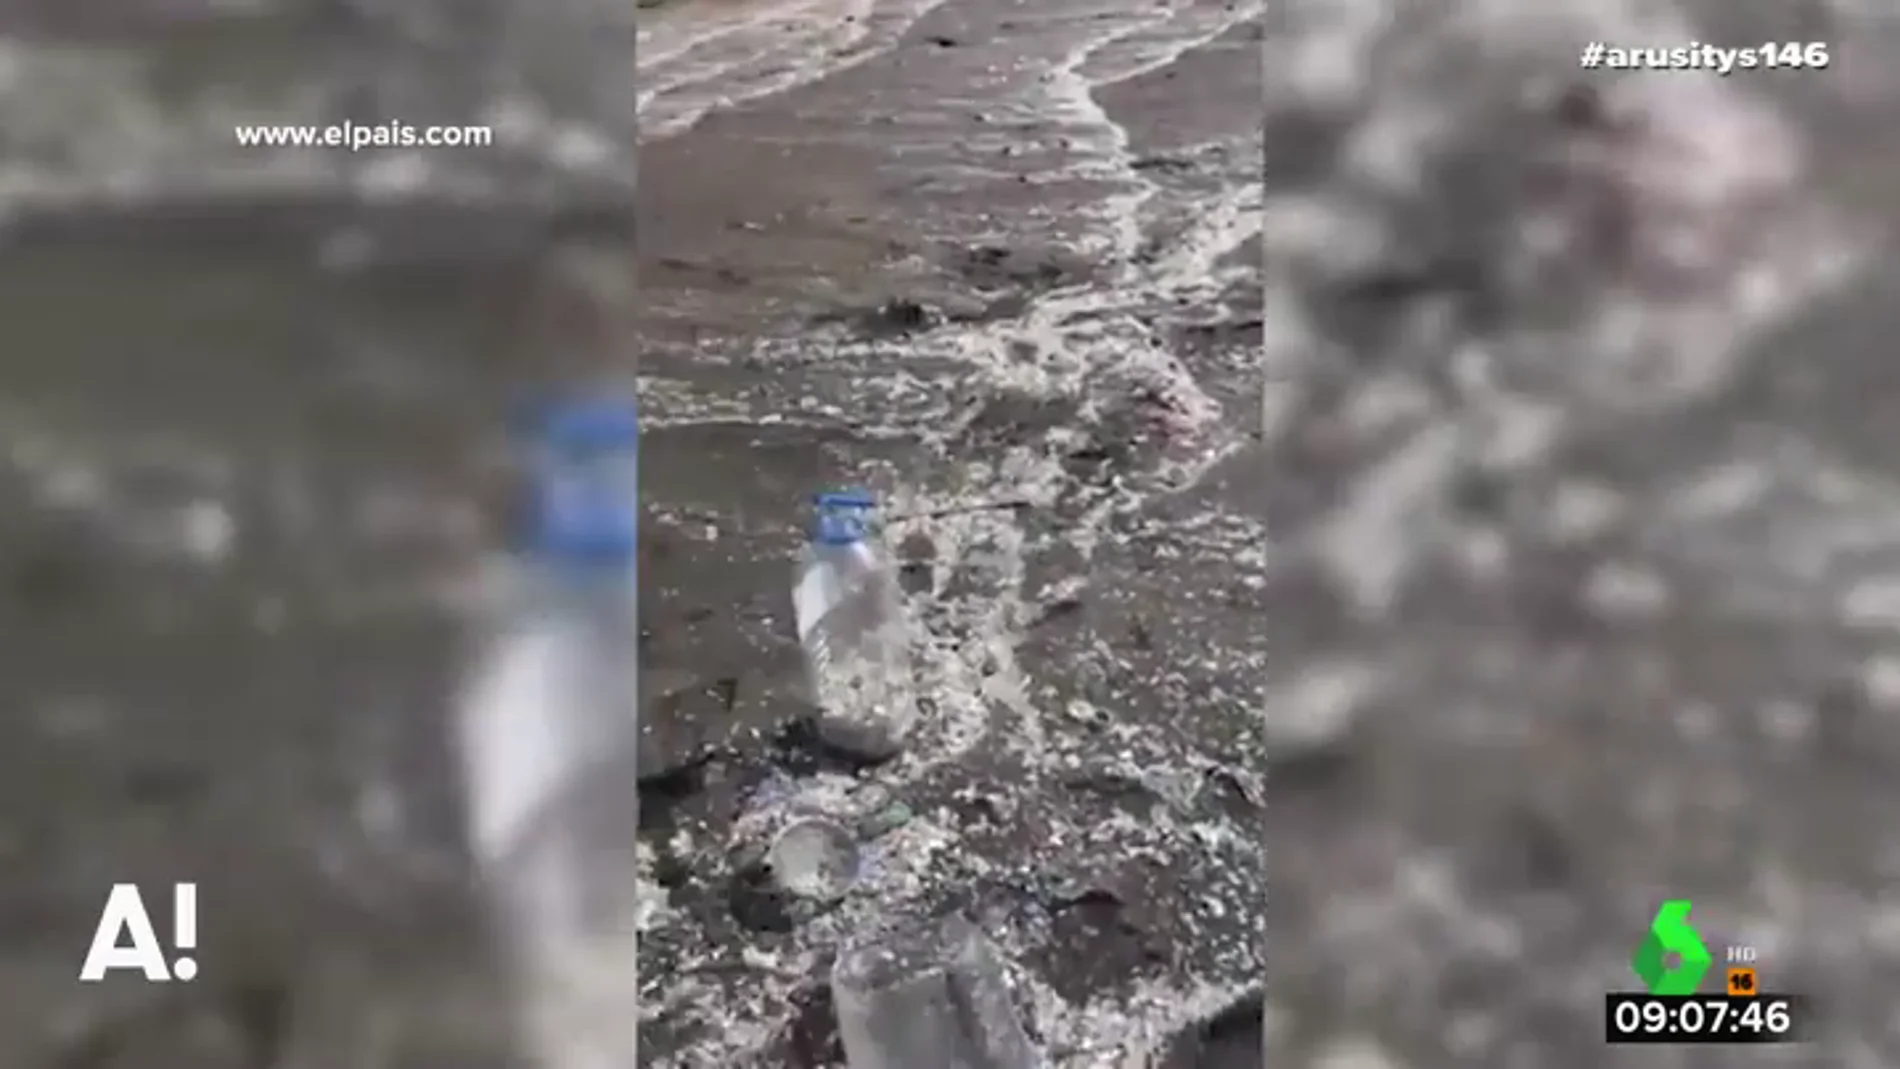 El impactante vídeo viral en el que una joven denuncia  cómo llegan kilos de plástico a una playa de Tenerife